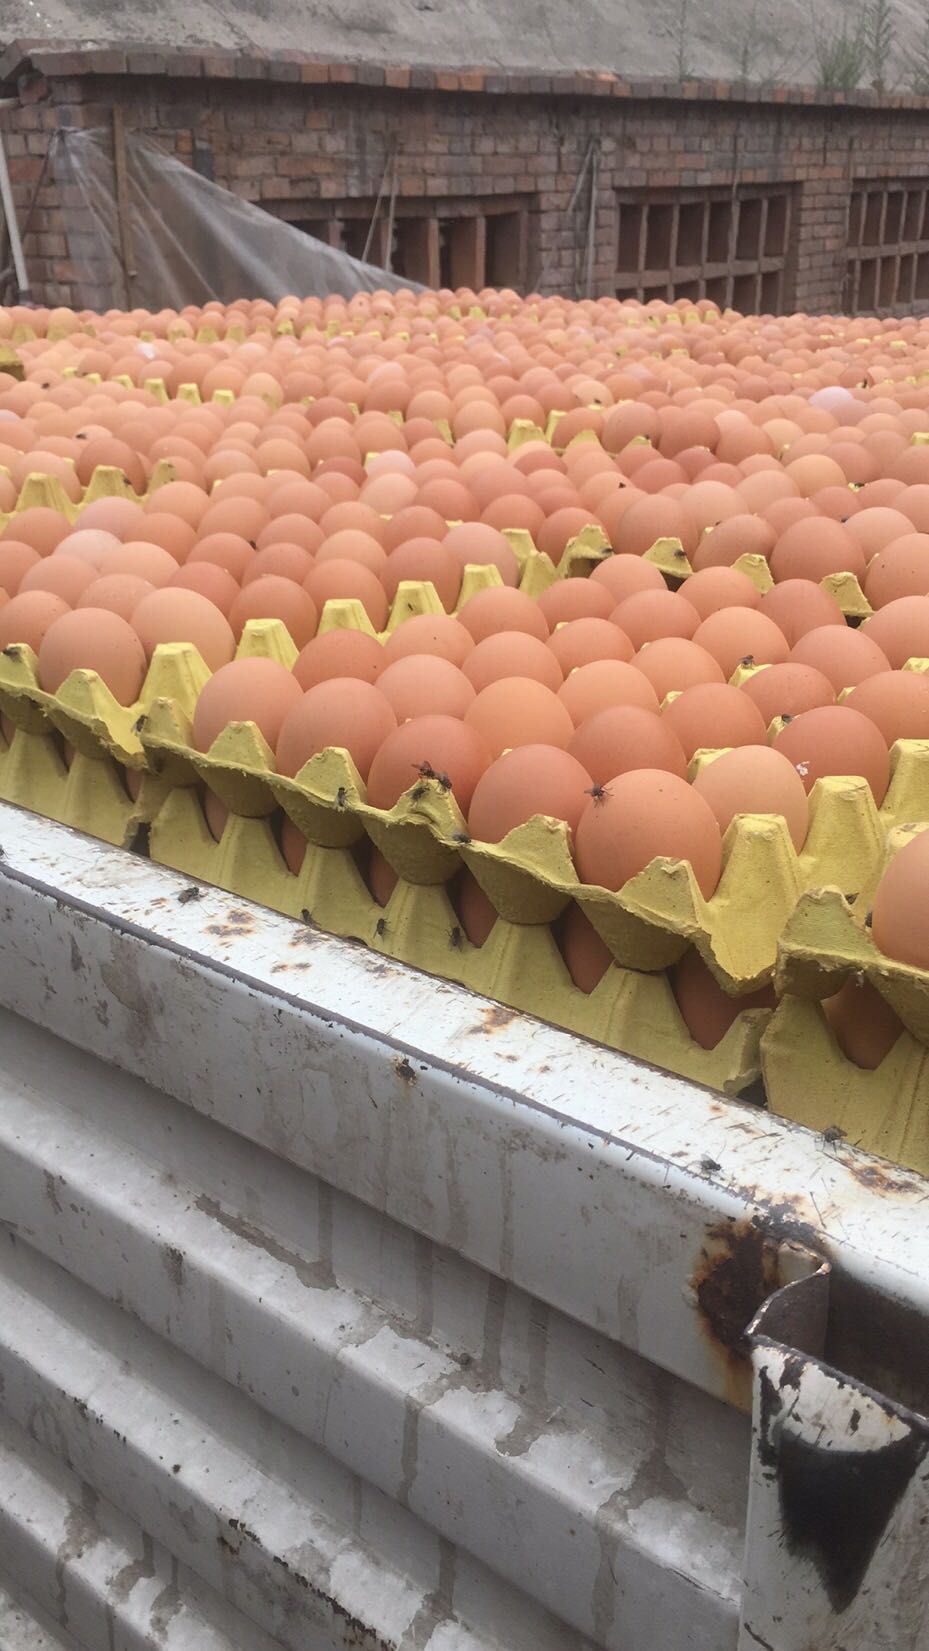 普通鸡蛋 褐壳蛋,粉蛋,养殖场直供质量保证